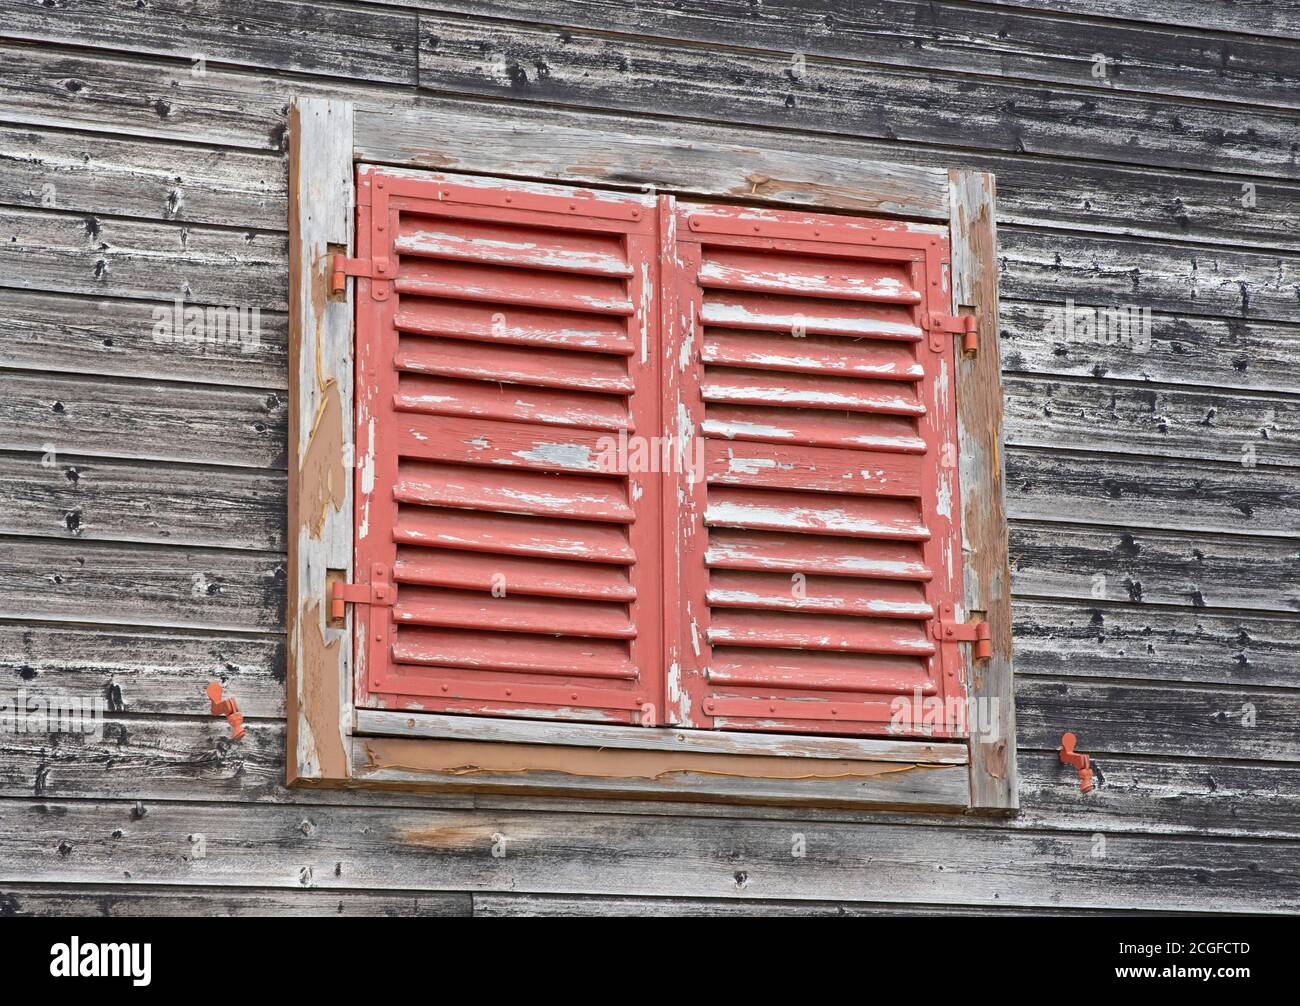 Vieux volets rouges sur un mur en bois, ayant besoin d'un peu de peinture fraîche Banque D'Images